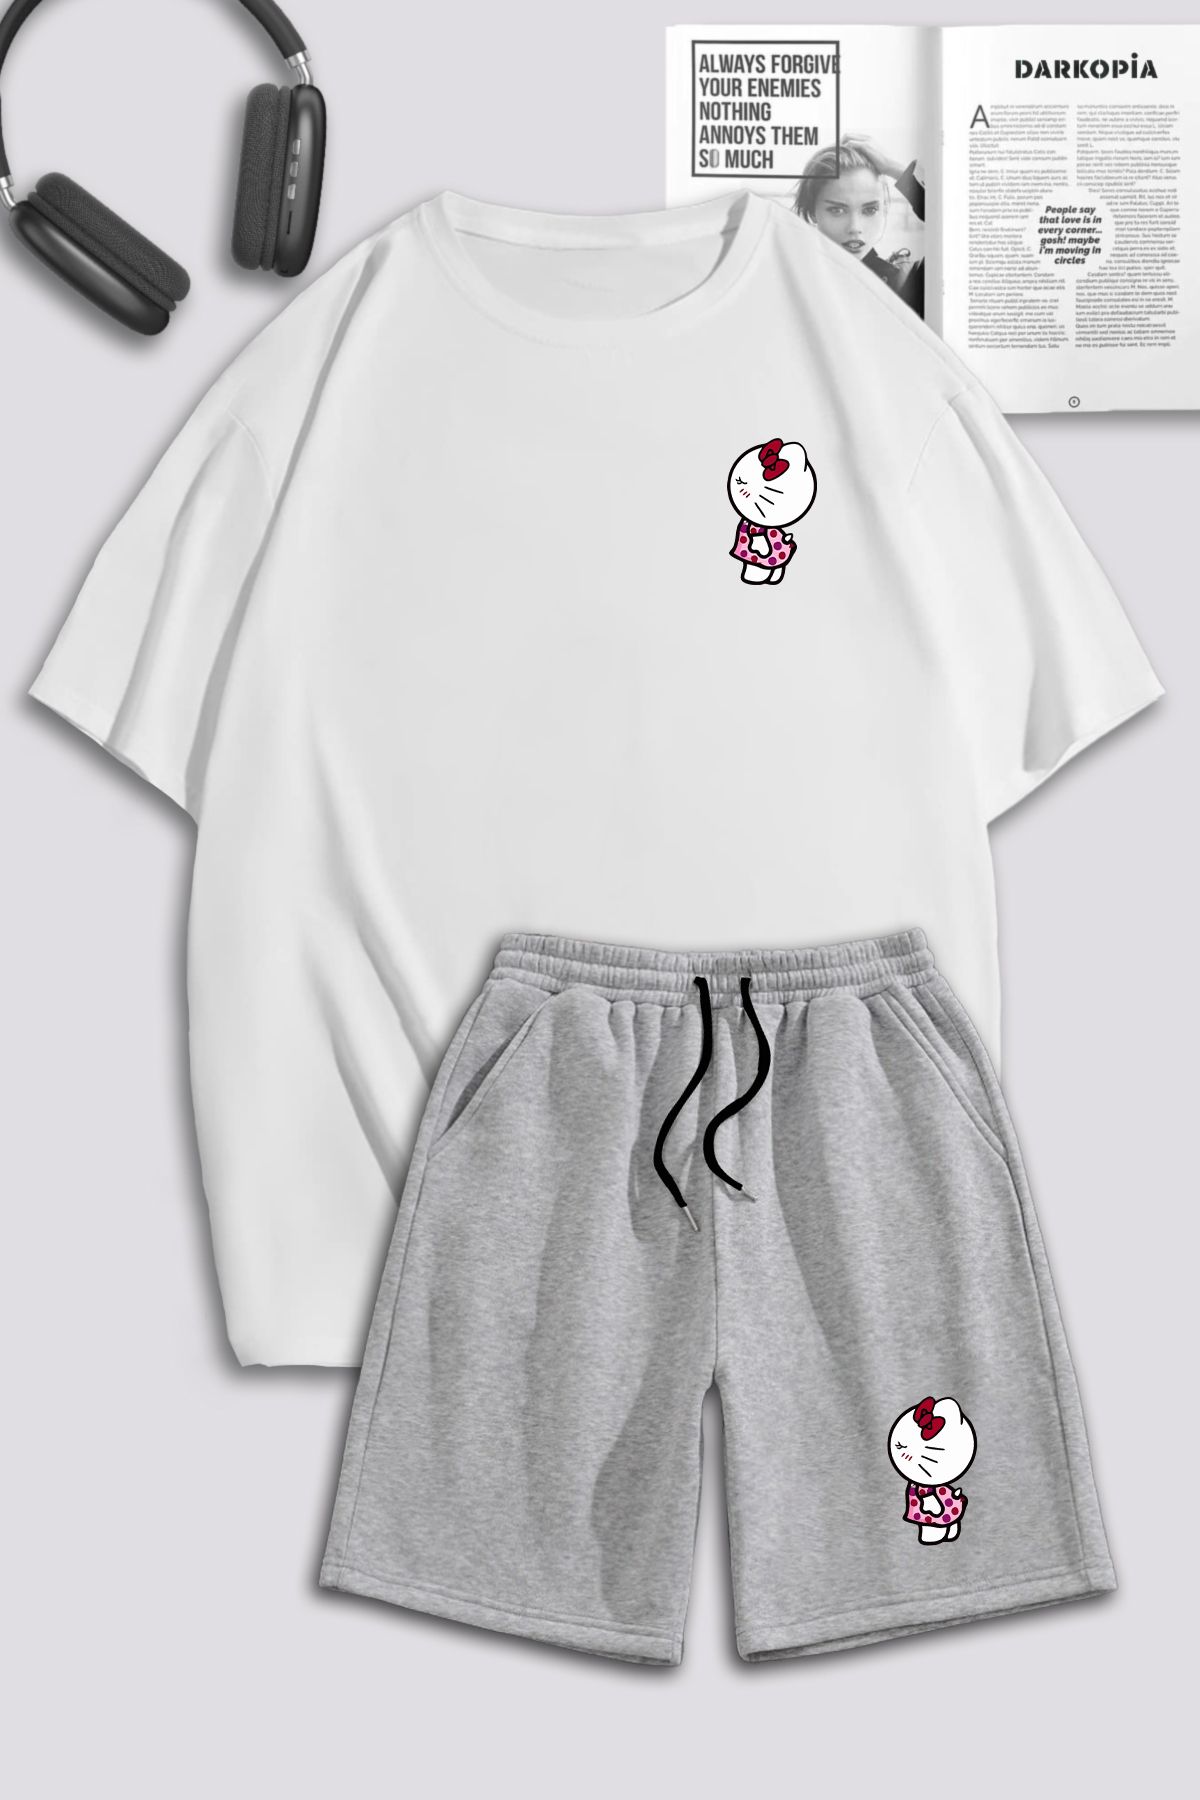 macklin Unisex Kadın Erkek Hello Kitty Baskılı Özel Tasarım Oversize Tshirt Ve Şort Eşofman Takımı